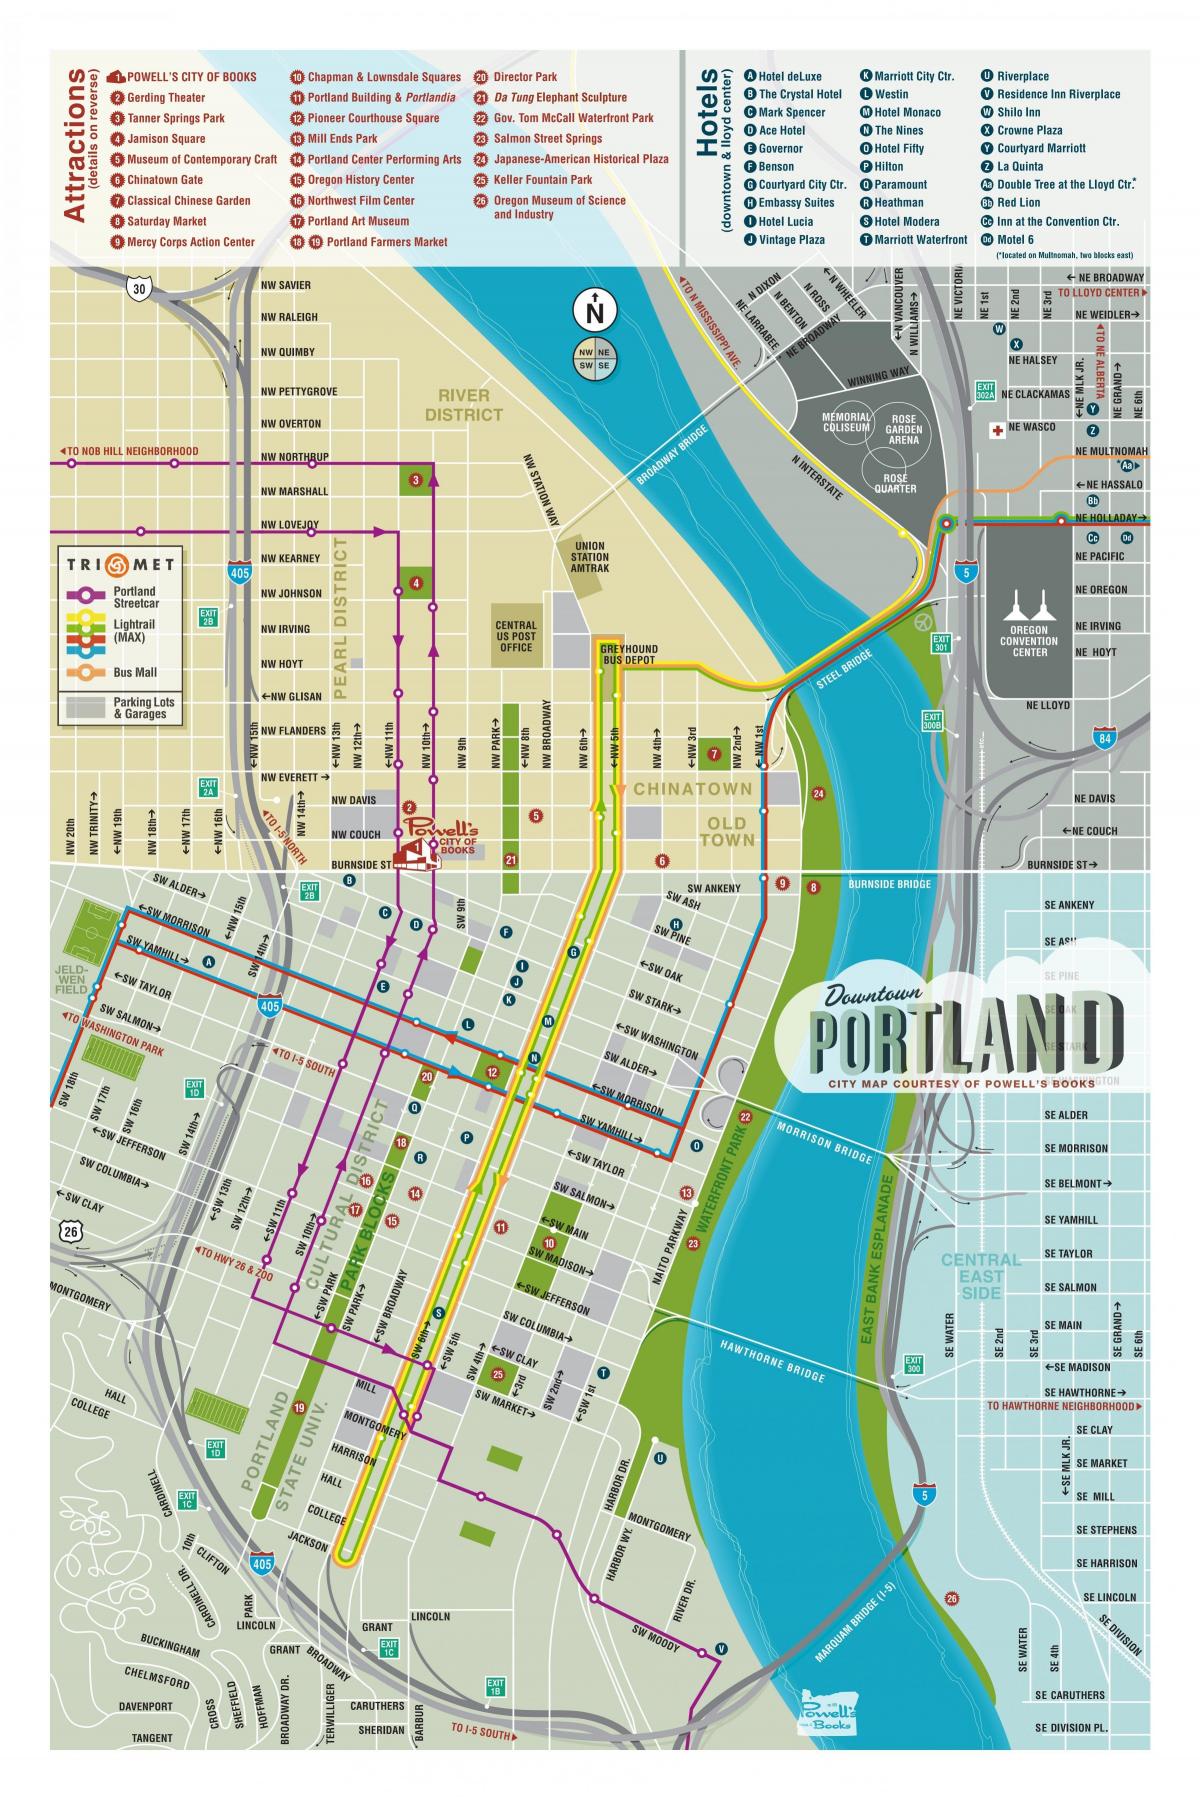 bản đồ của khách Portland